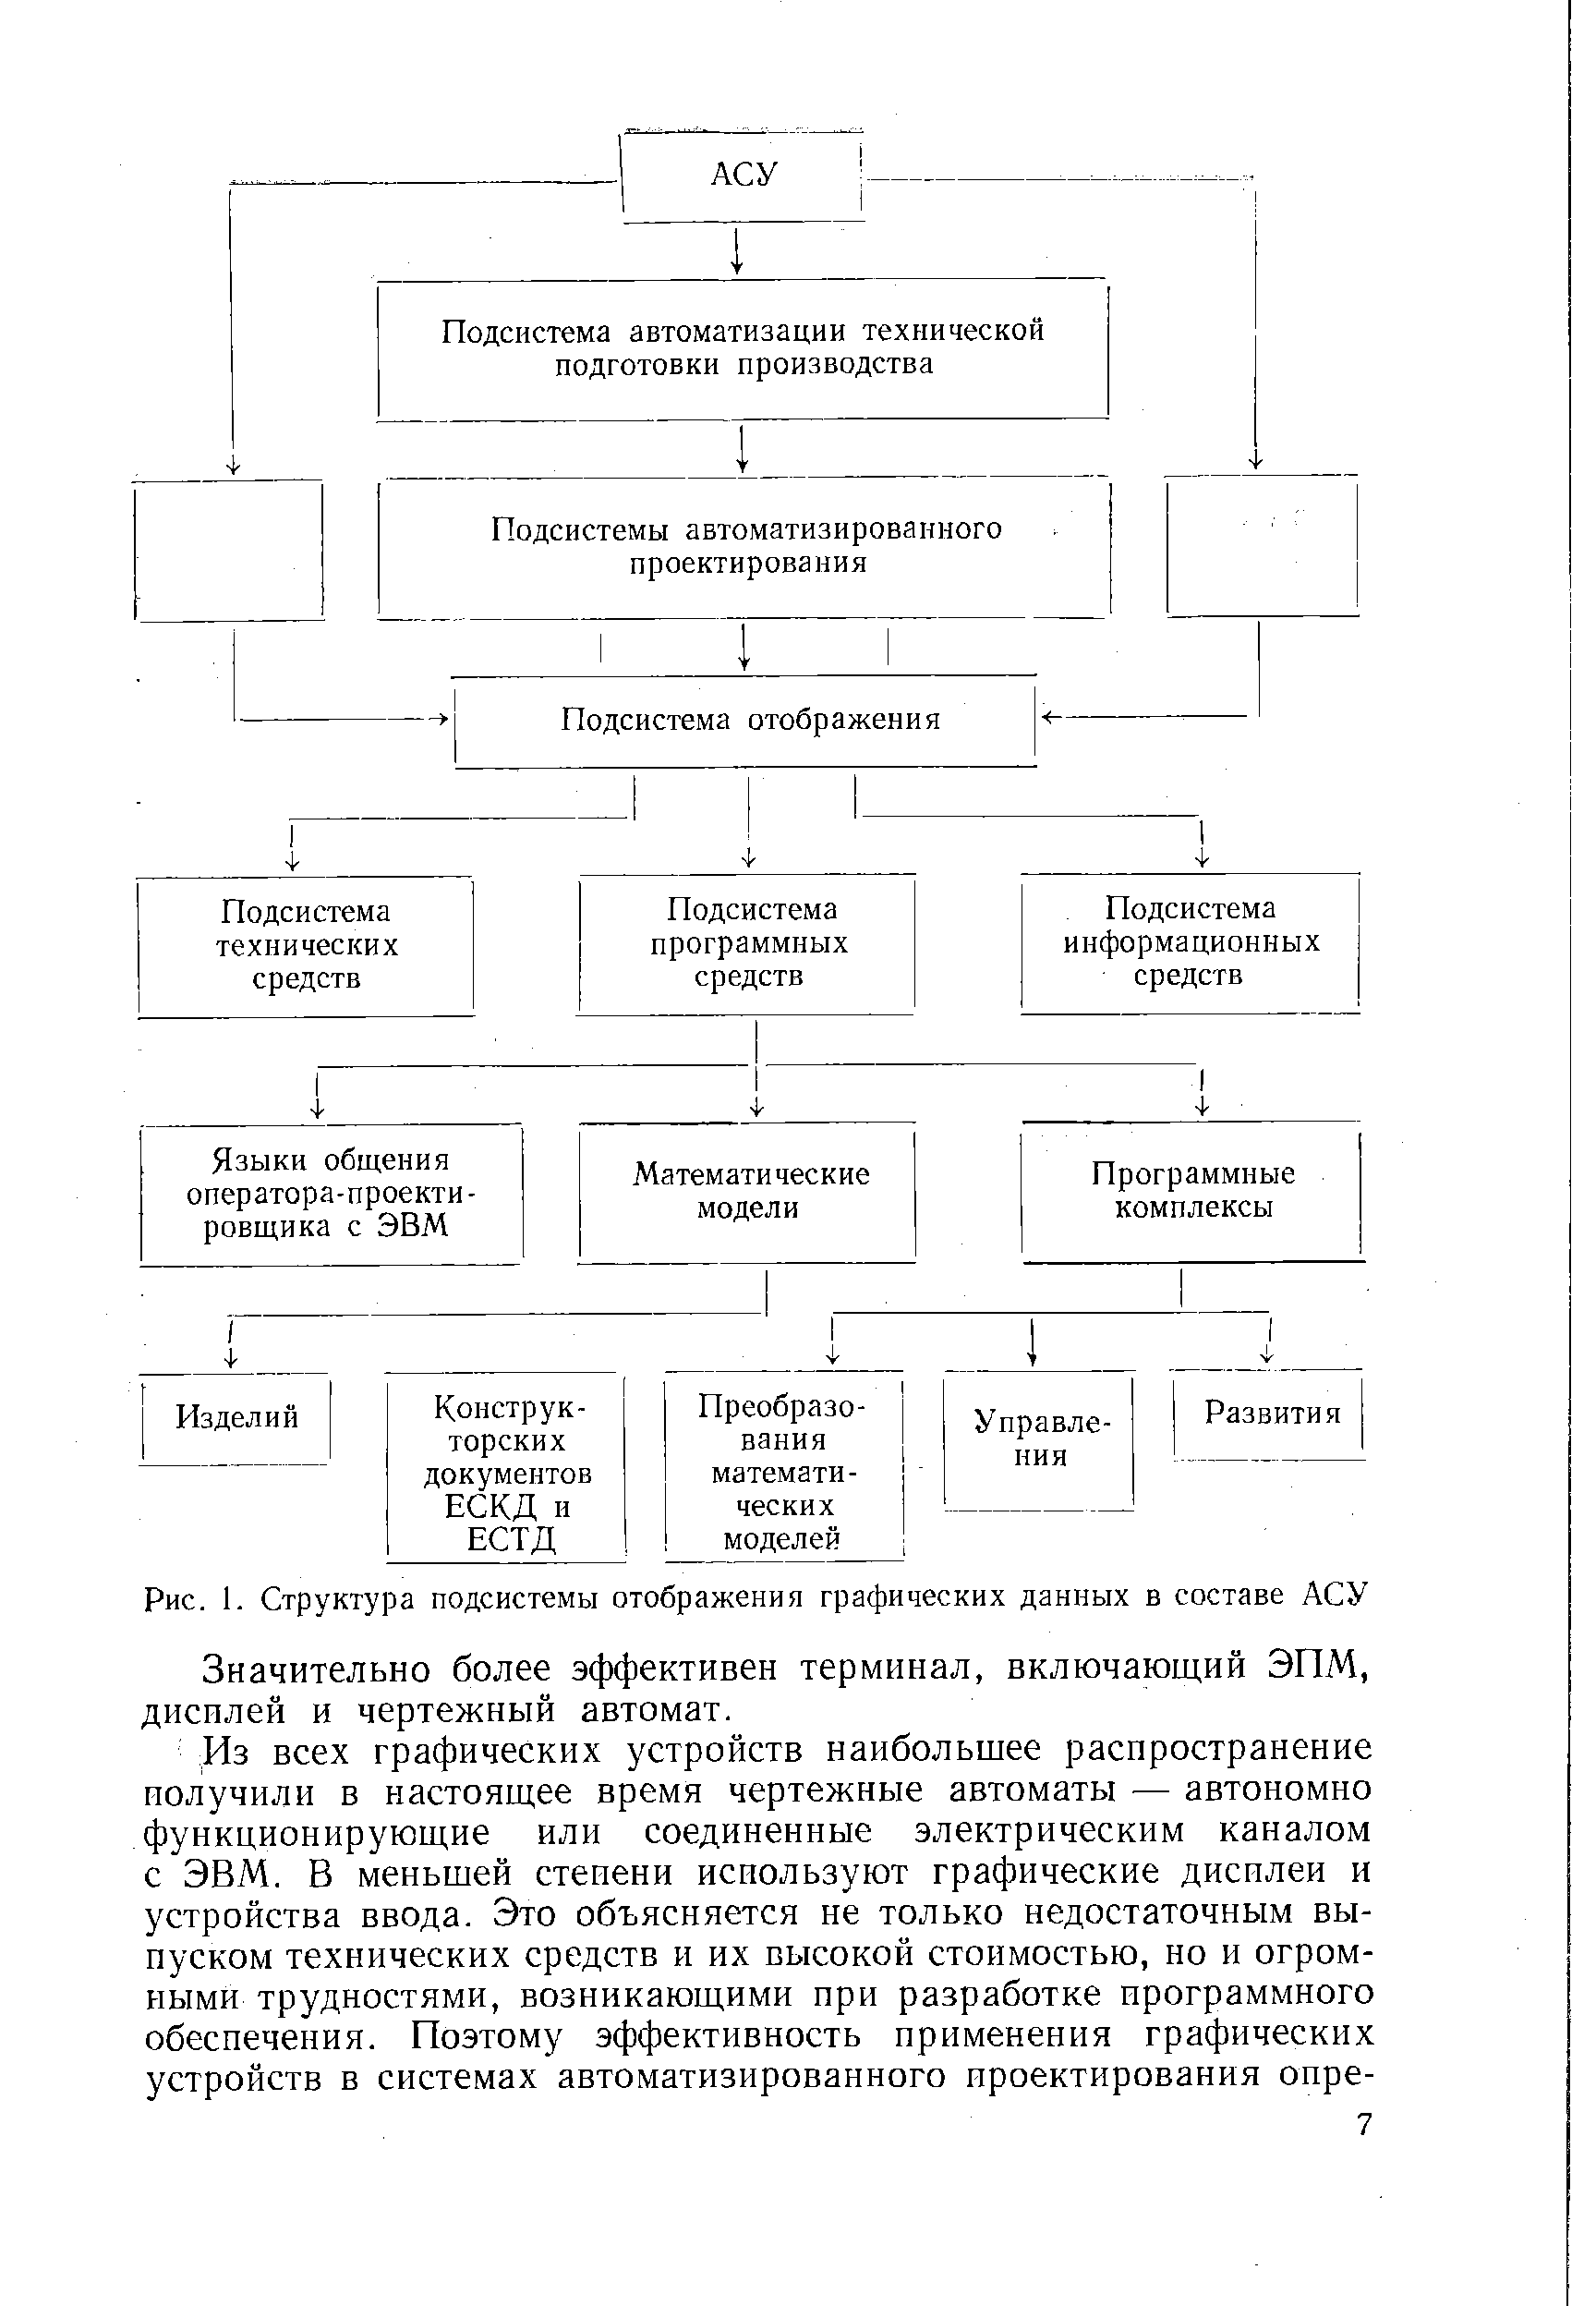 Рис. 1. Структура подсистемы отображения графических данных в составе АСУ
